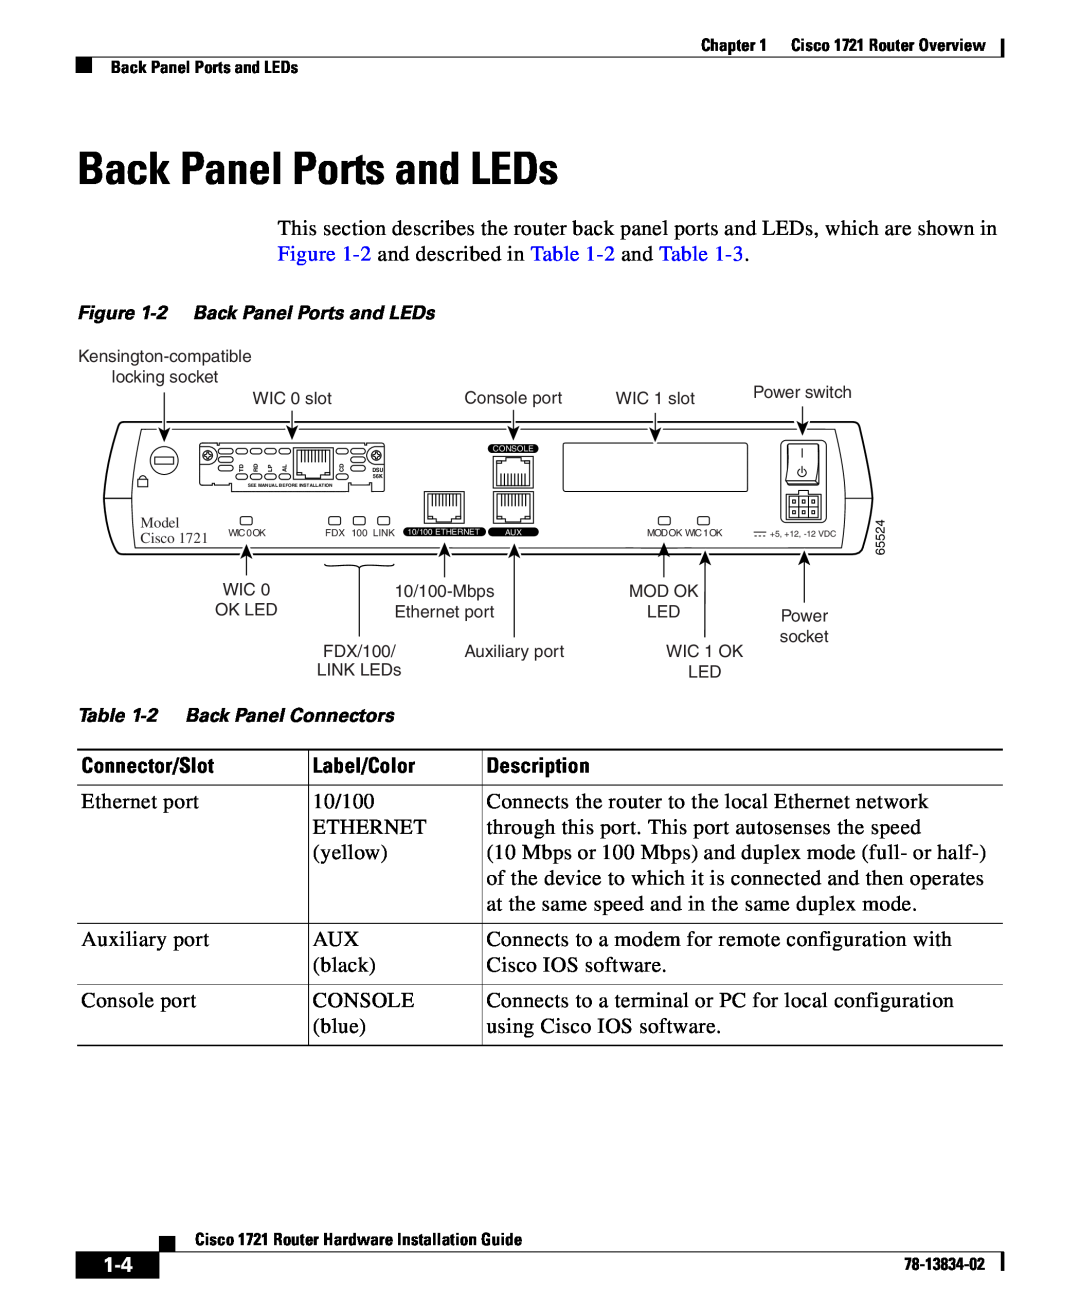 Cisco Systems 1721 Connector/Slot, Label/Color, Description, 2 Back Panel Ports and LEDs, 2 Back Panel Connectors 